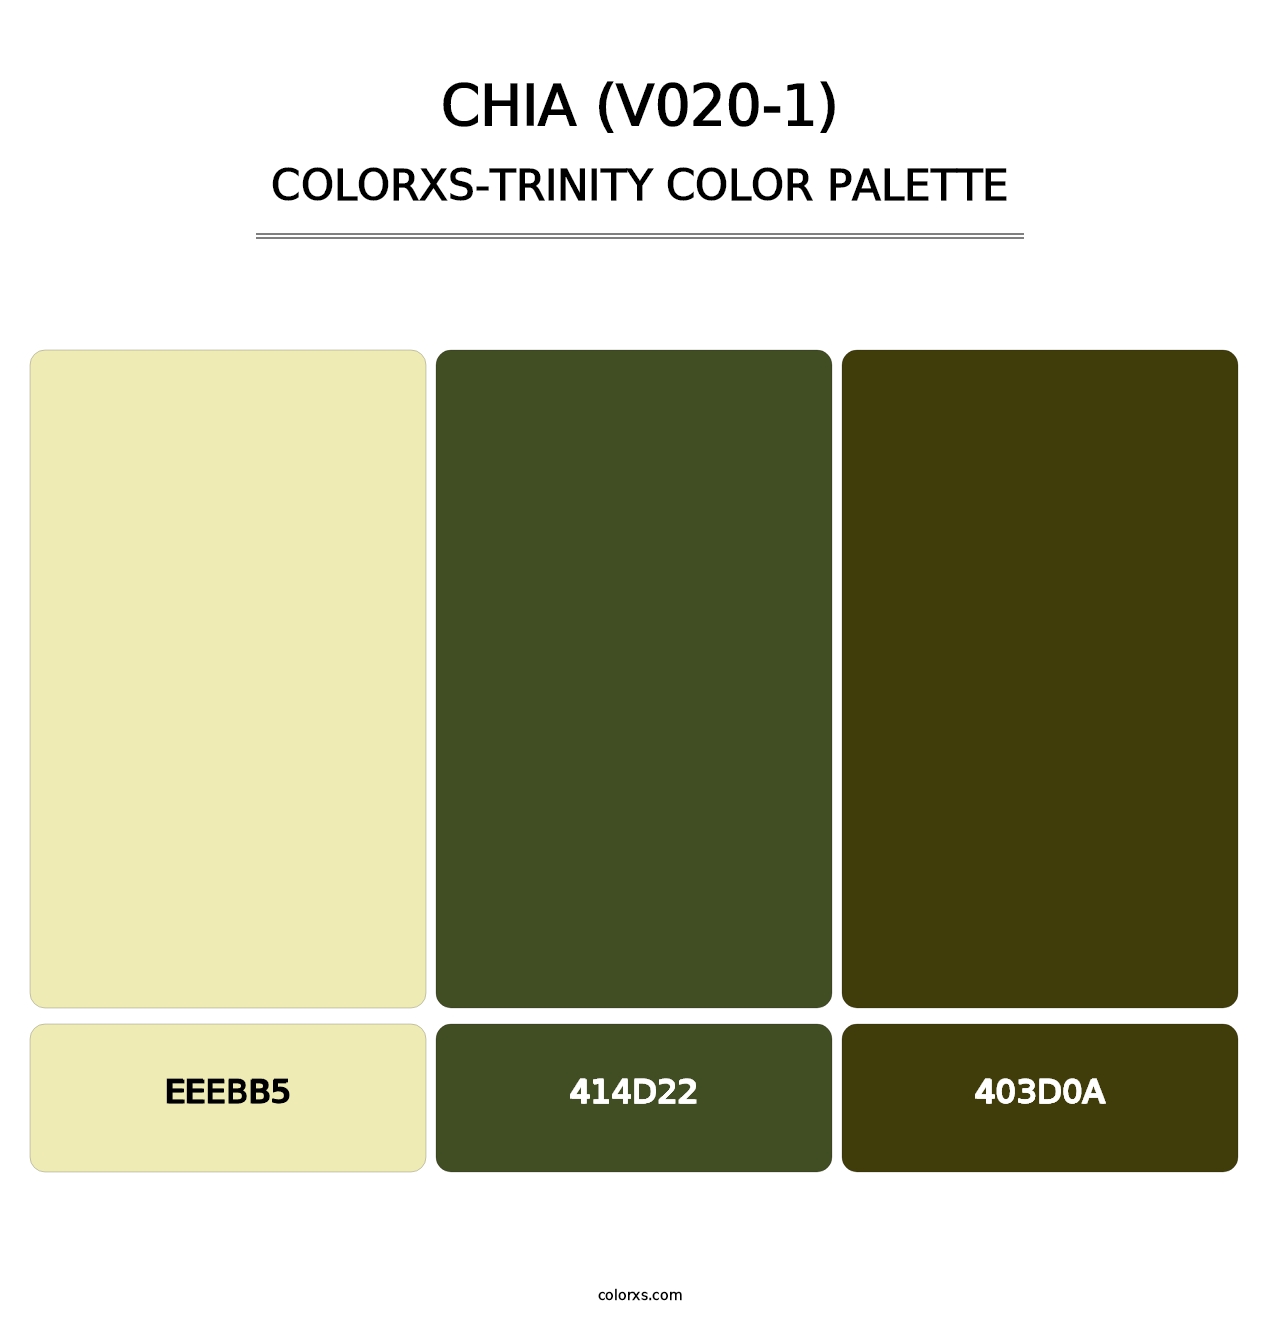 Chia (V020-1) - Colorxs Trinity Palette